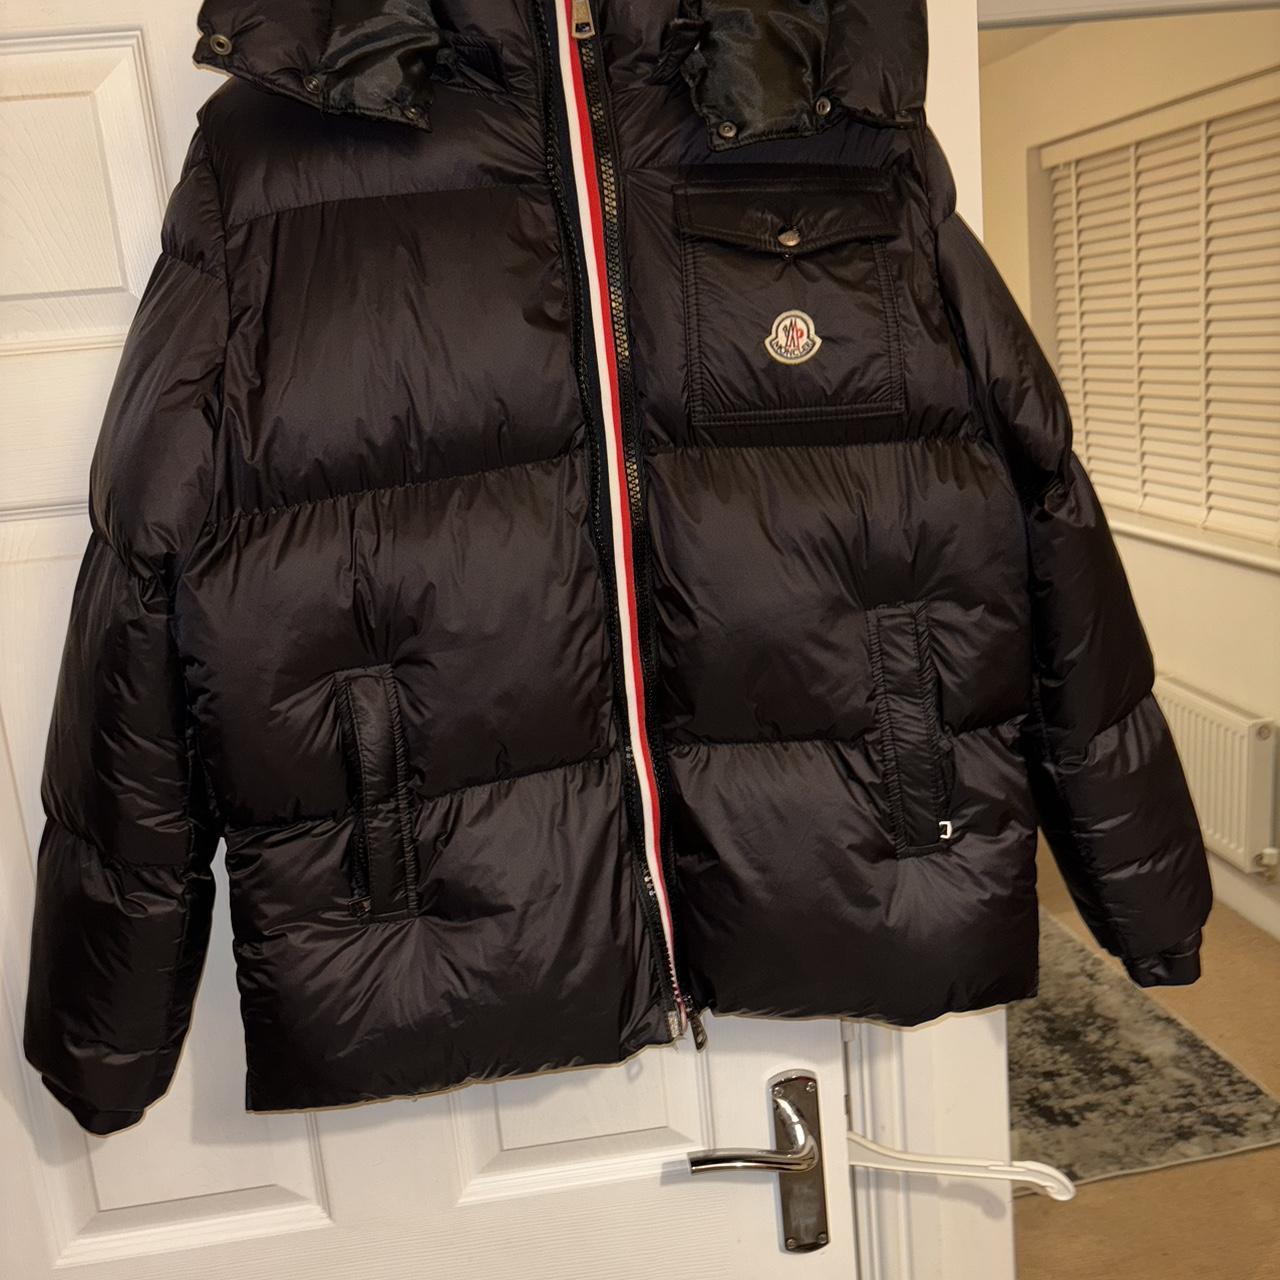 Moncler jacket fantastic condition worn once - Depop